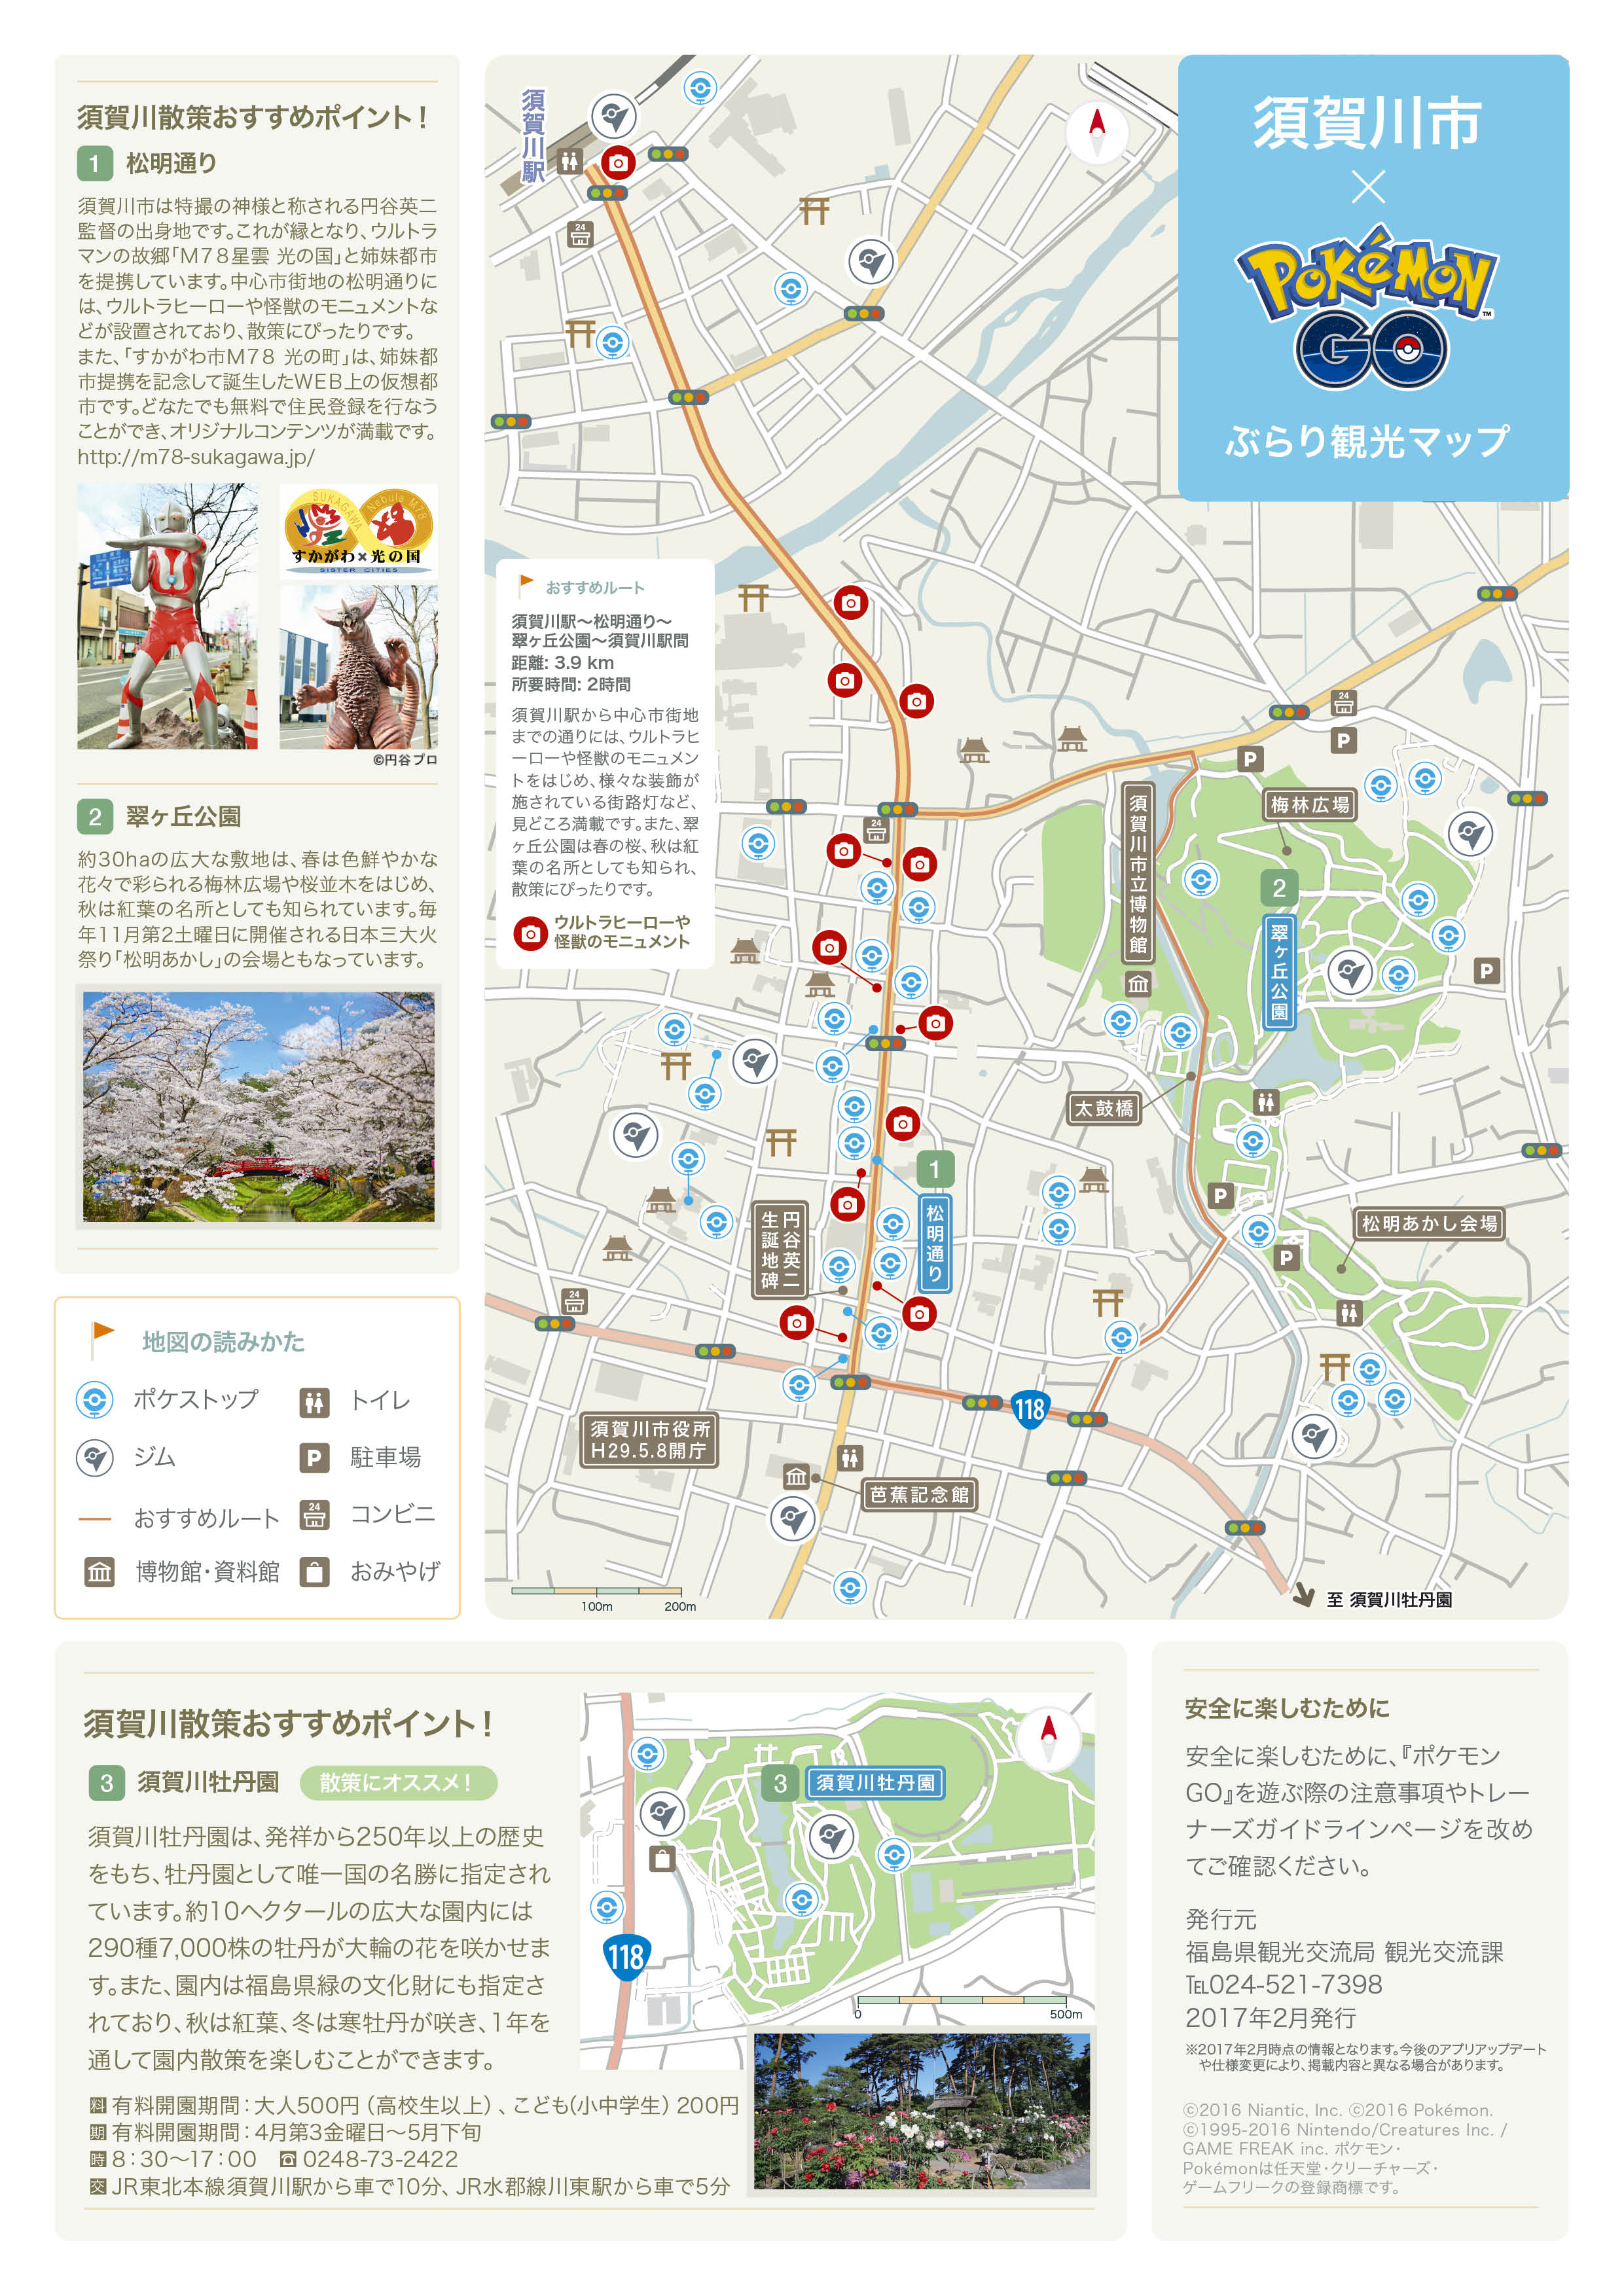 ポケモンgo が地方自治体の周遊マップ作成を支援 福島県内市町村で展開 新 公民連携最前線 Pppまちづくり